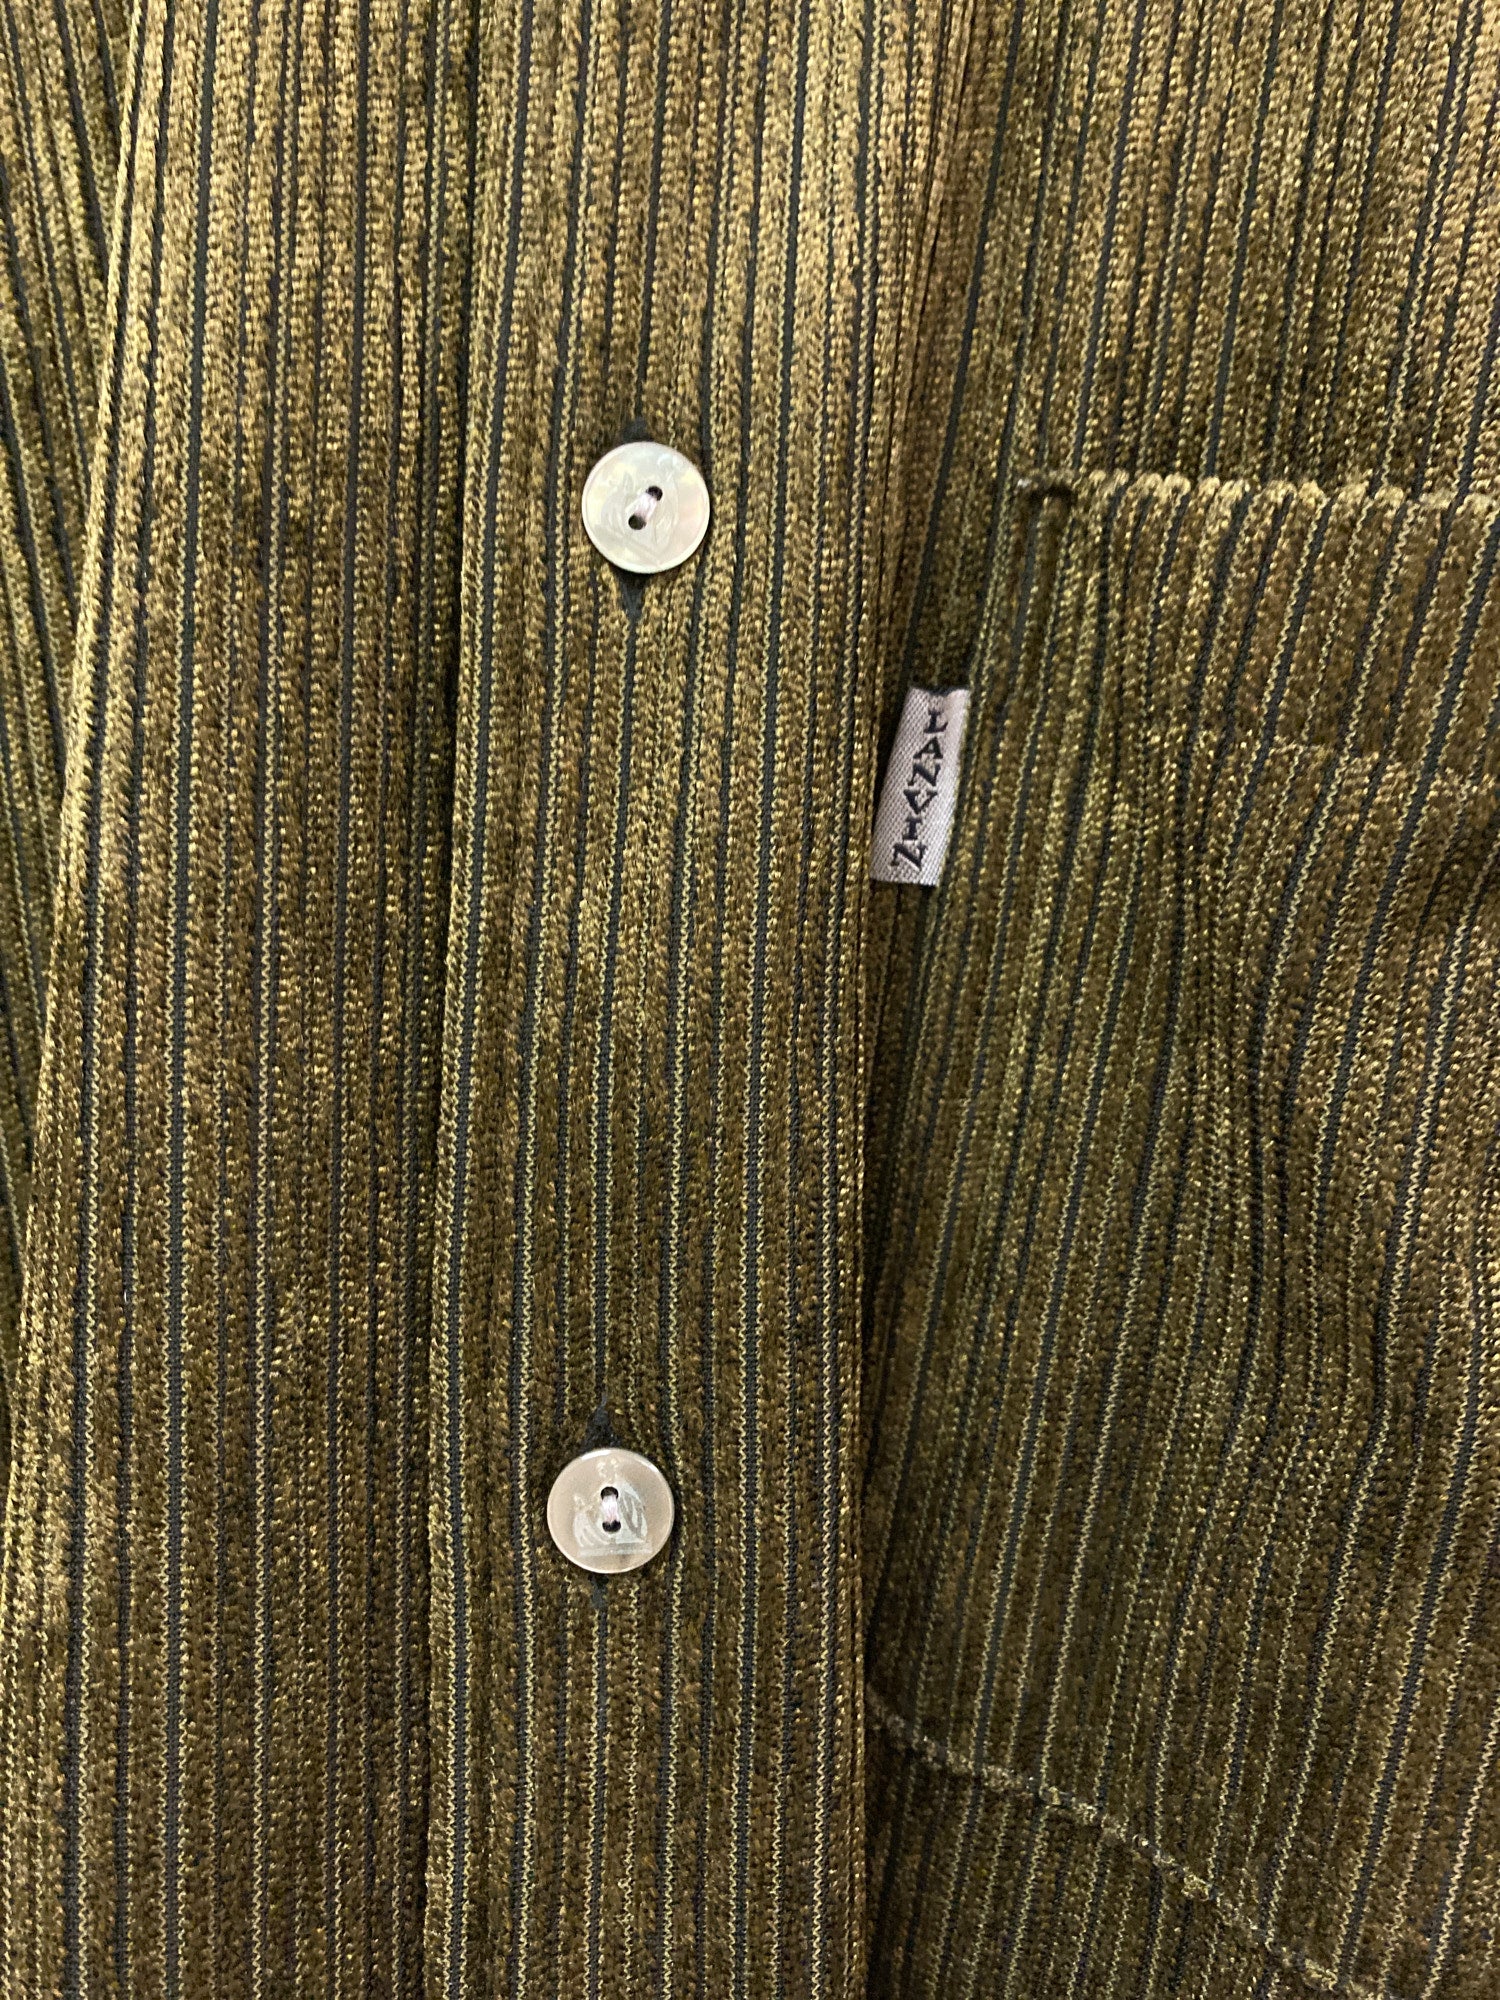 Lanvin classique gold / brown polyester corduroy shirt - mens L M